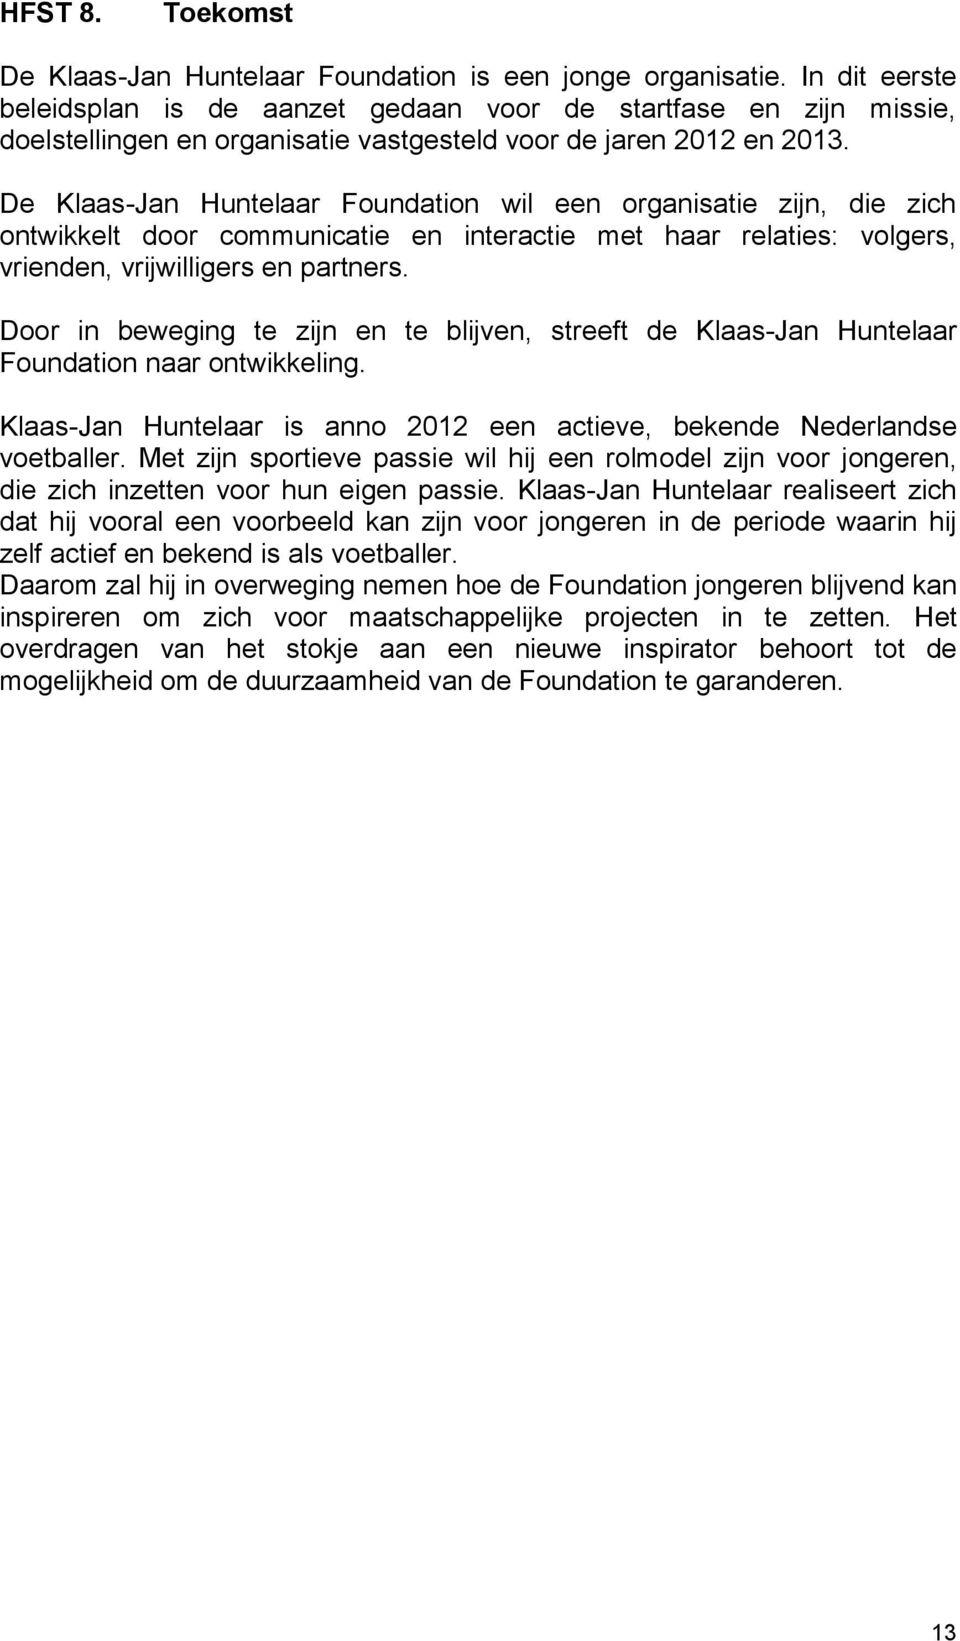 De Klaas-Jan Huntelaar Foundation wil een organisatie zijn, die zich ontwikkelt door communicatie en interactie met haar relaties: volgers, vrienden, vrijwilligers en partners.